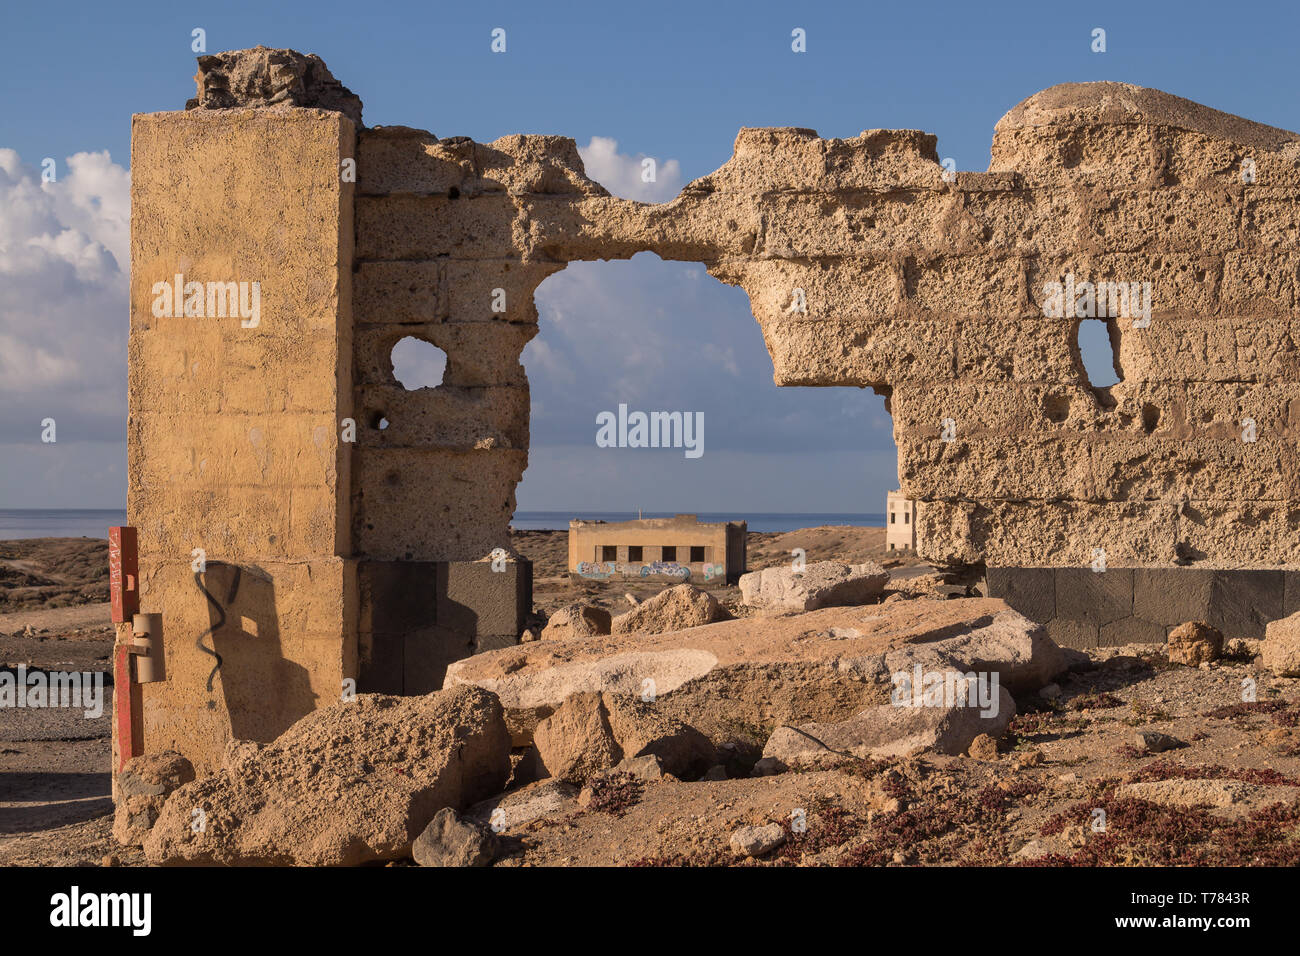 Le rovine di un abbandonato Agenti della leprosi ospedale. Ruvide pareti di pietra. Mattina con un cielo blu. Abades, Tenerife, Isole Canarie, Spagna Foto Stock